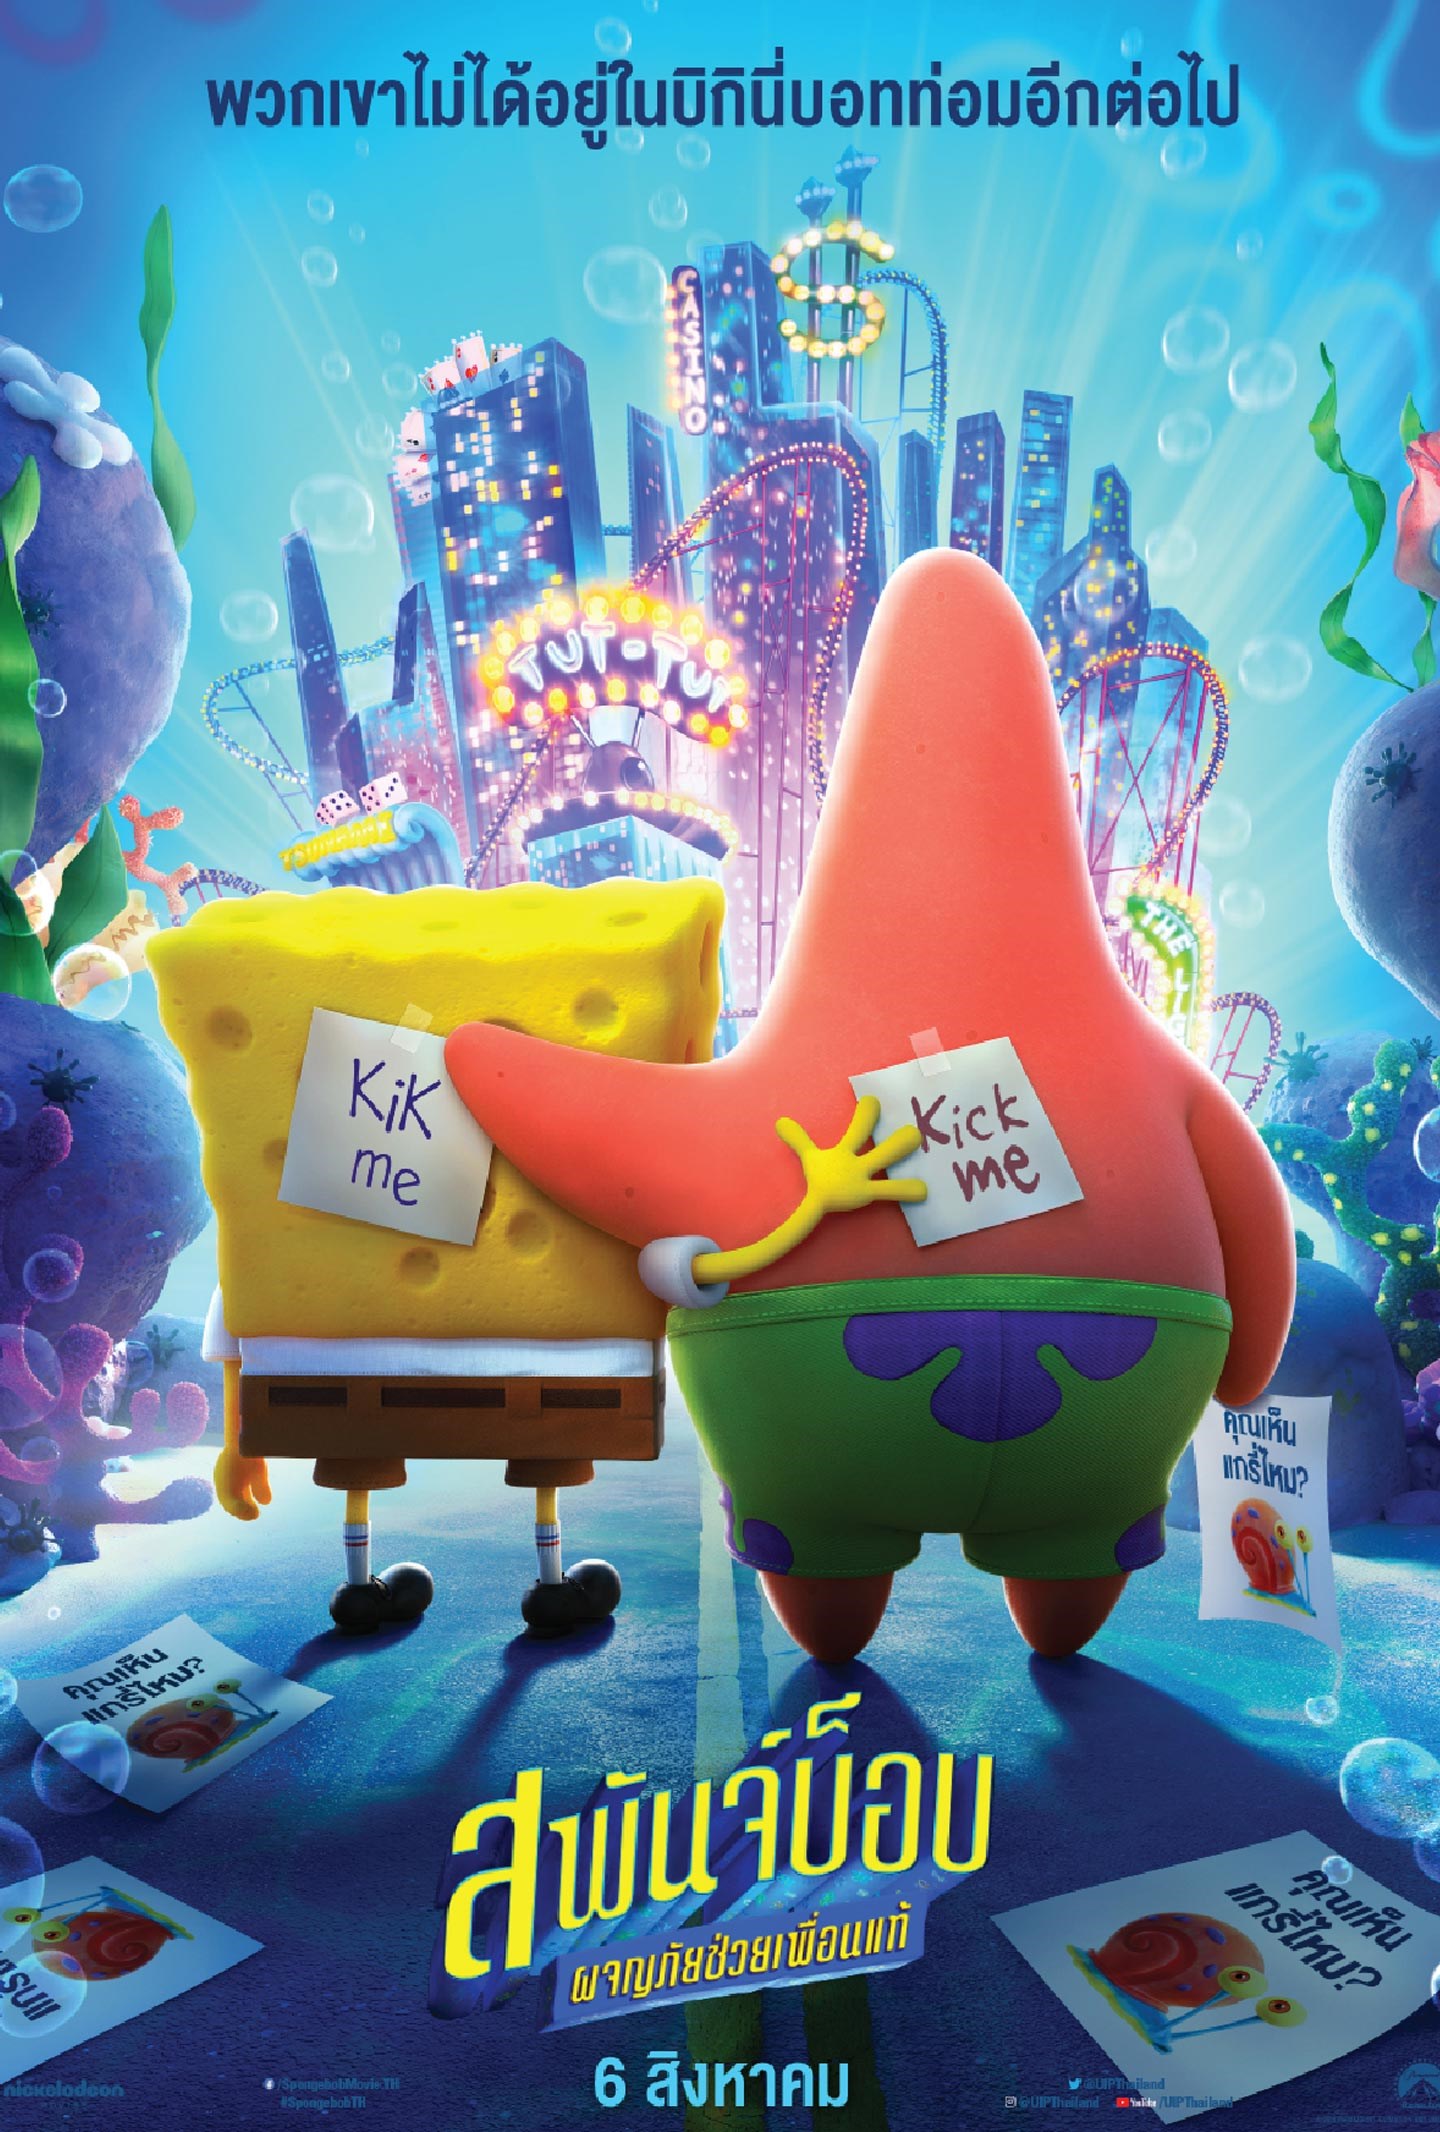 ดูหนังฟรีออนไลน์ The SpongeBob Movie: Sponge on the Run สพันจ์บ็อบ: ผจญภัยช่วยเพื่อนแท้ เต็มเรื่องพากย์ไทย